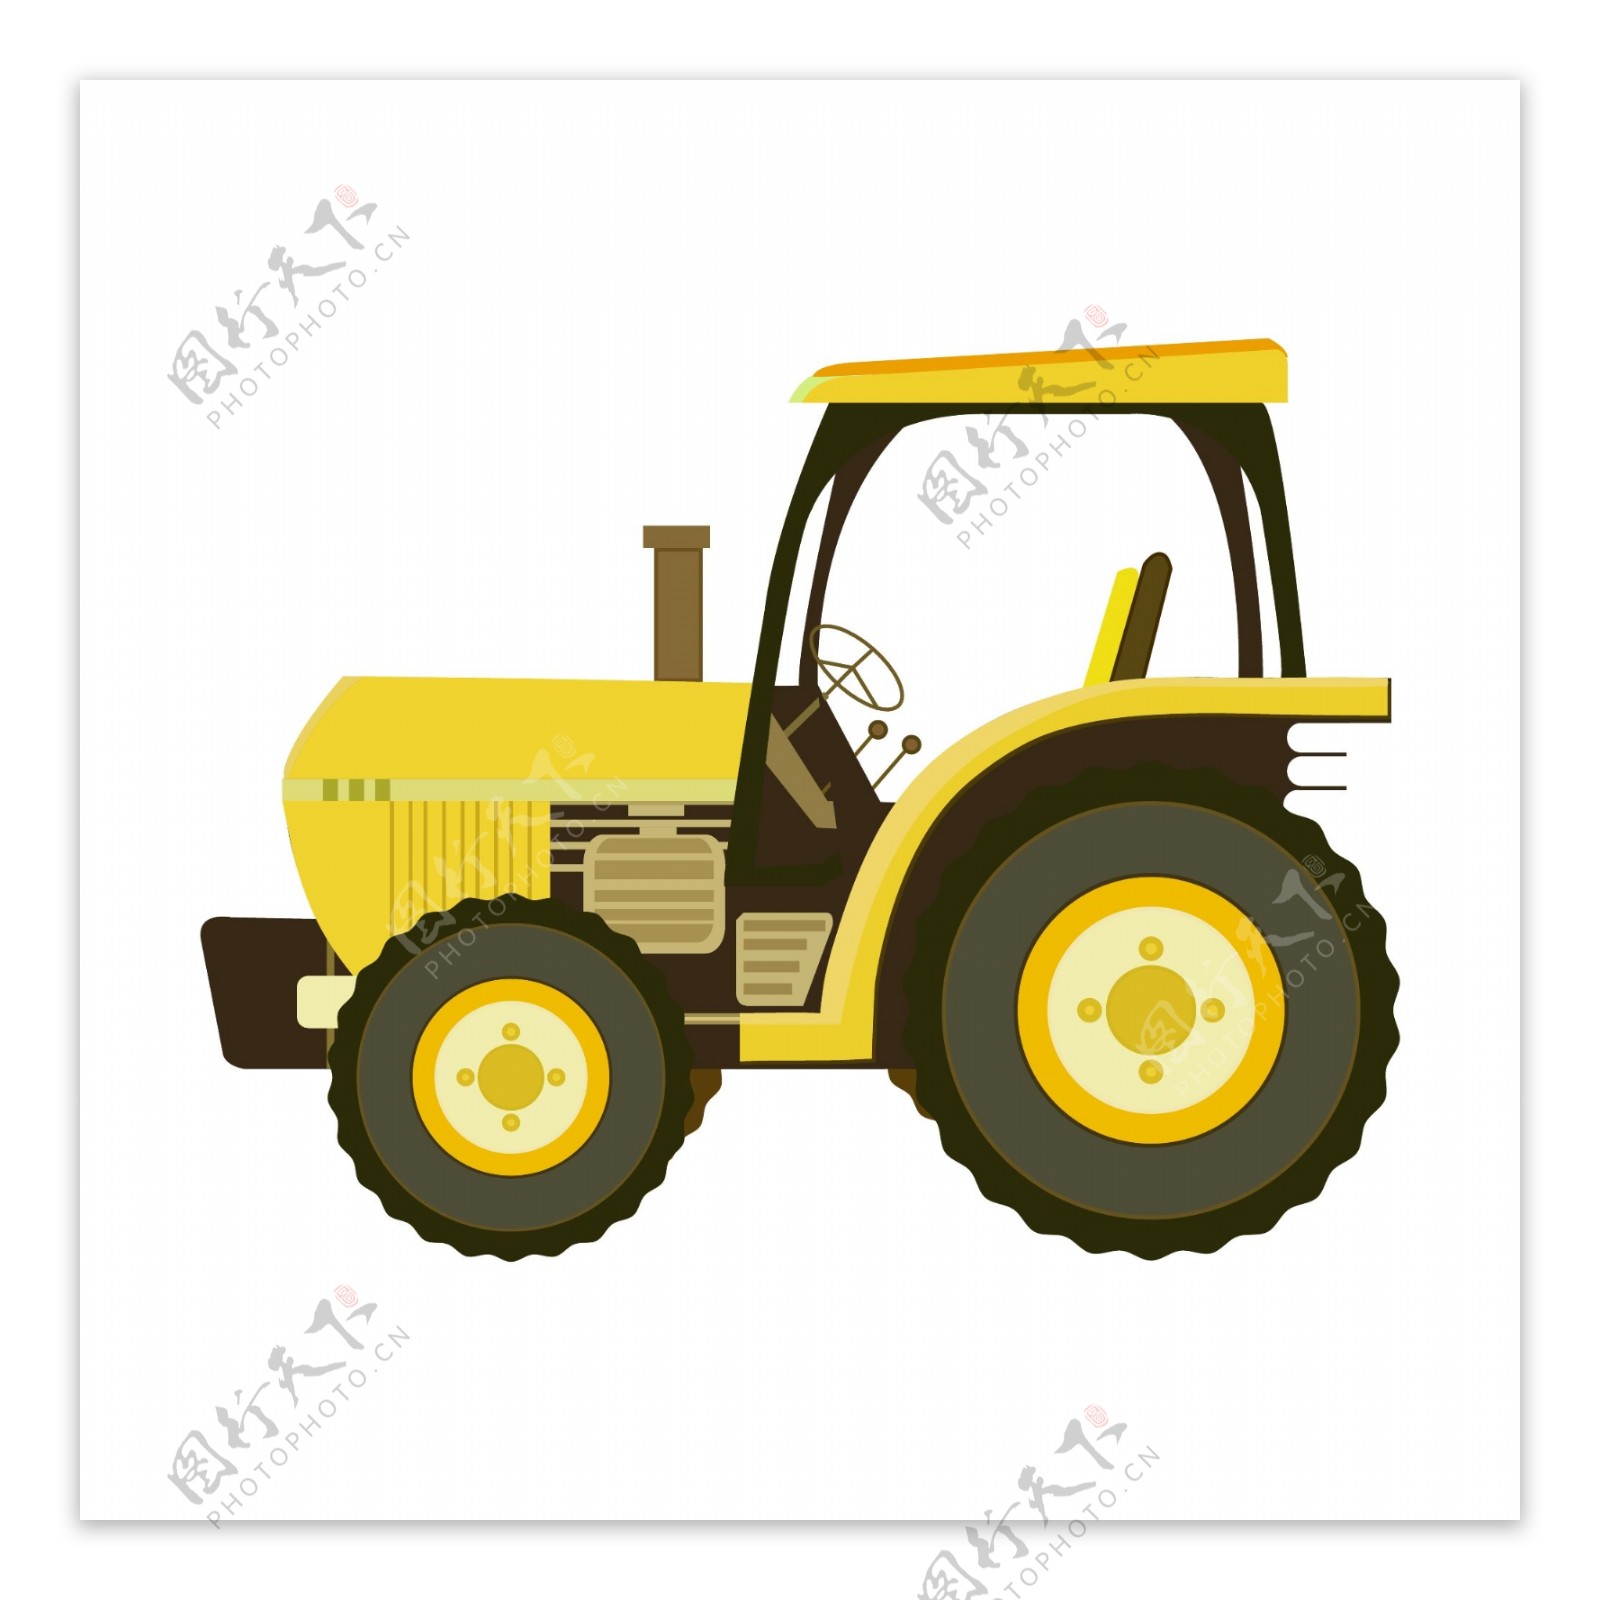 一辆黄色拖拉机插图